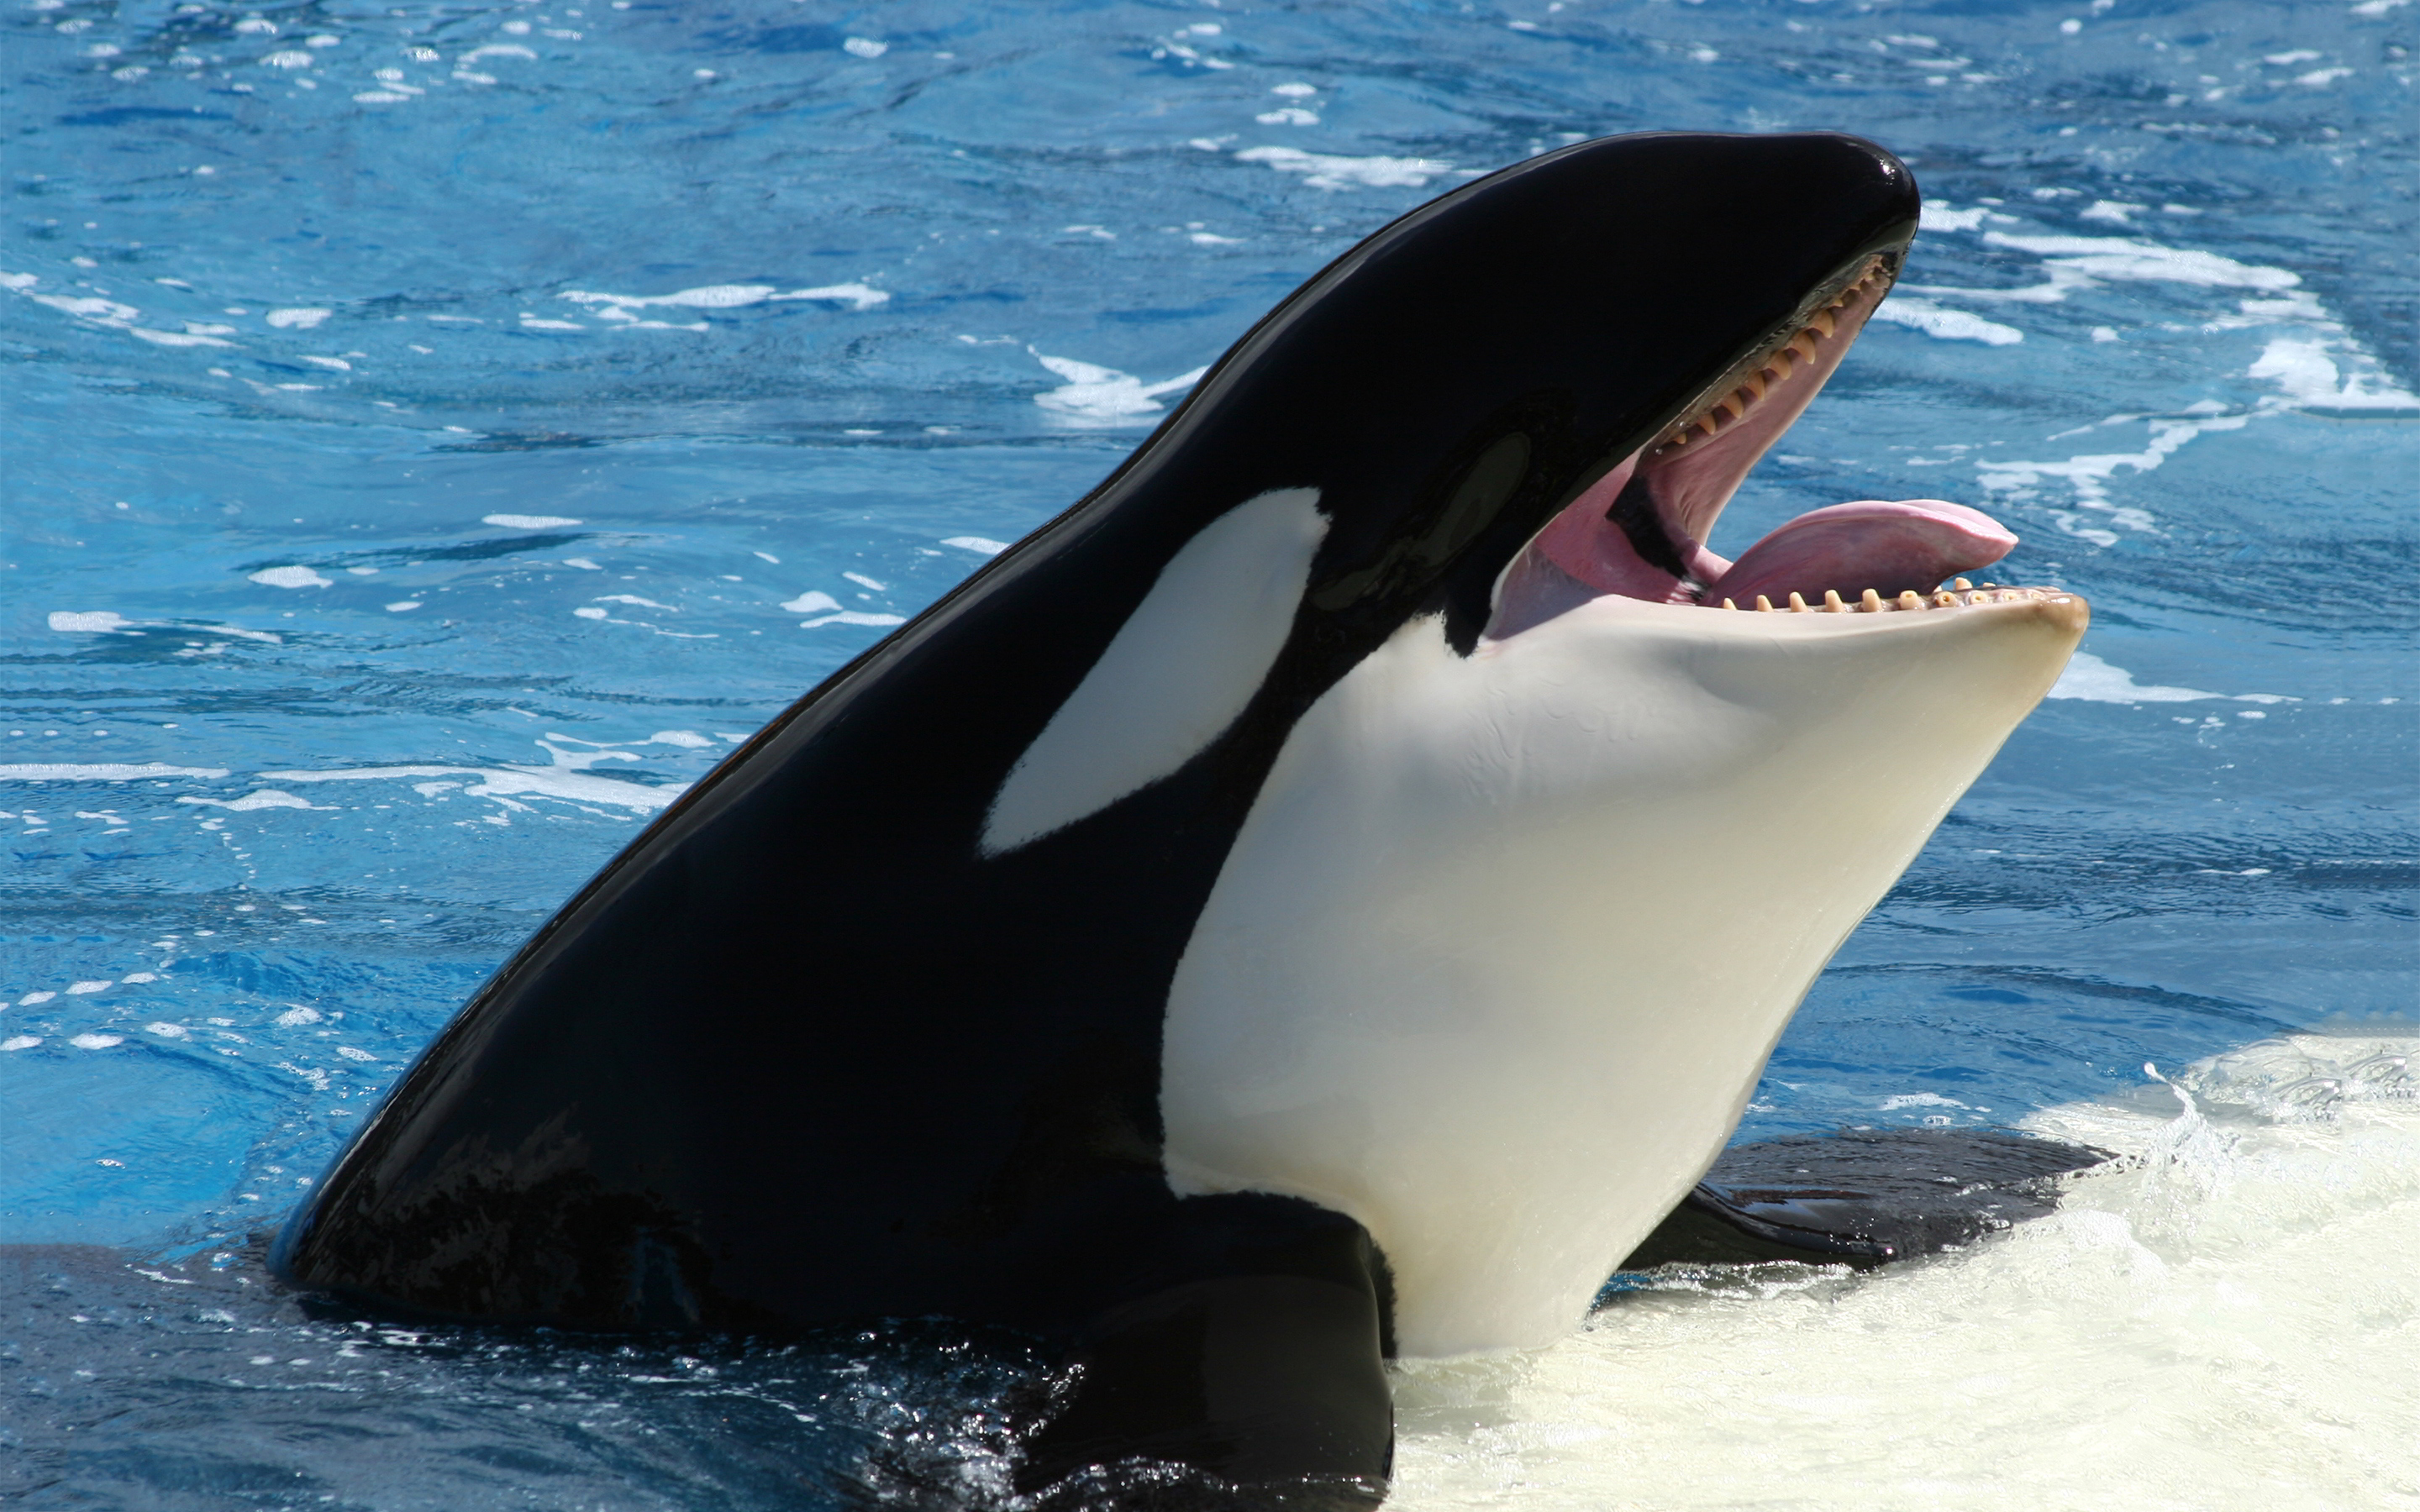 Orca-orca-the-killer-whale-35737437-2880-1800.jpg